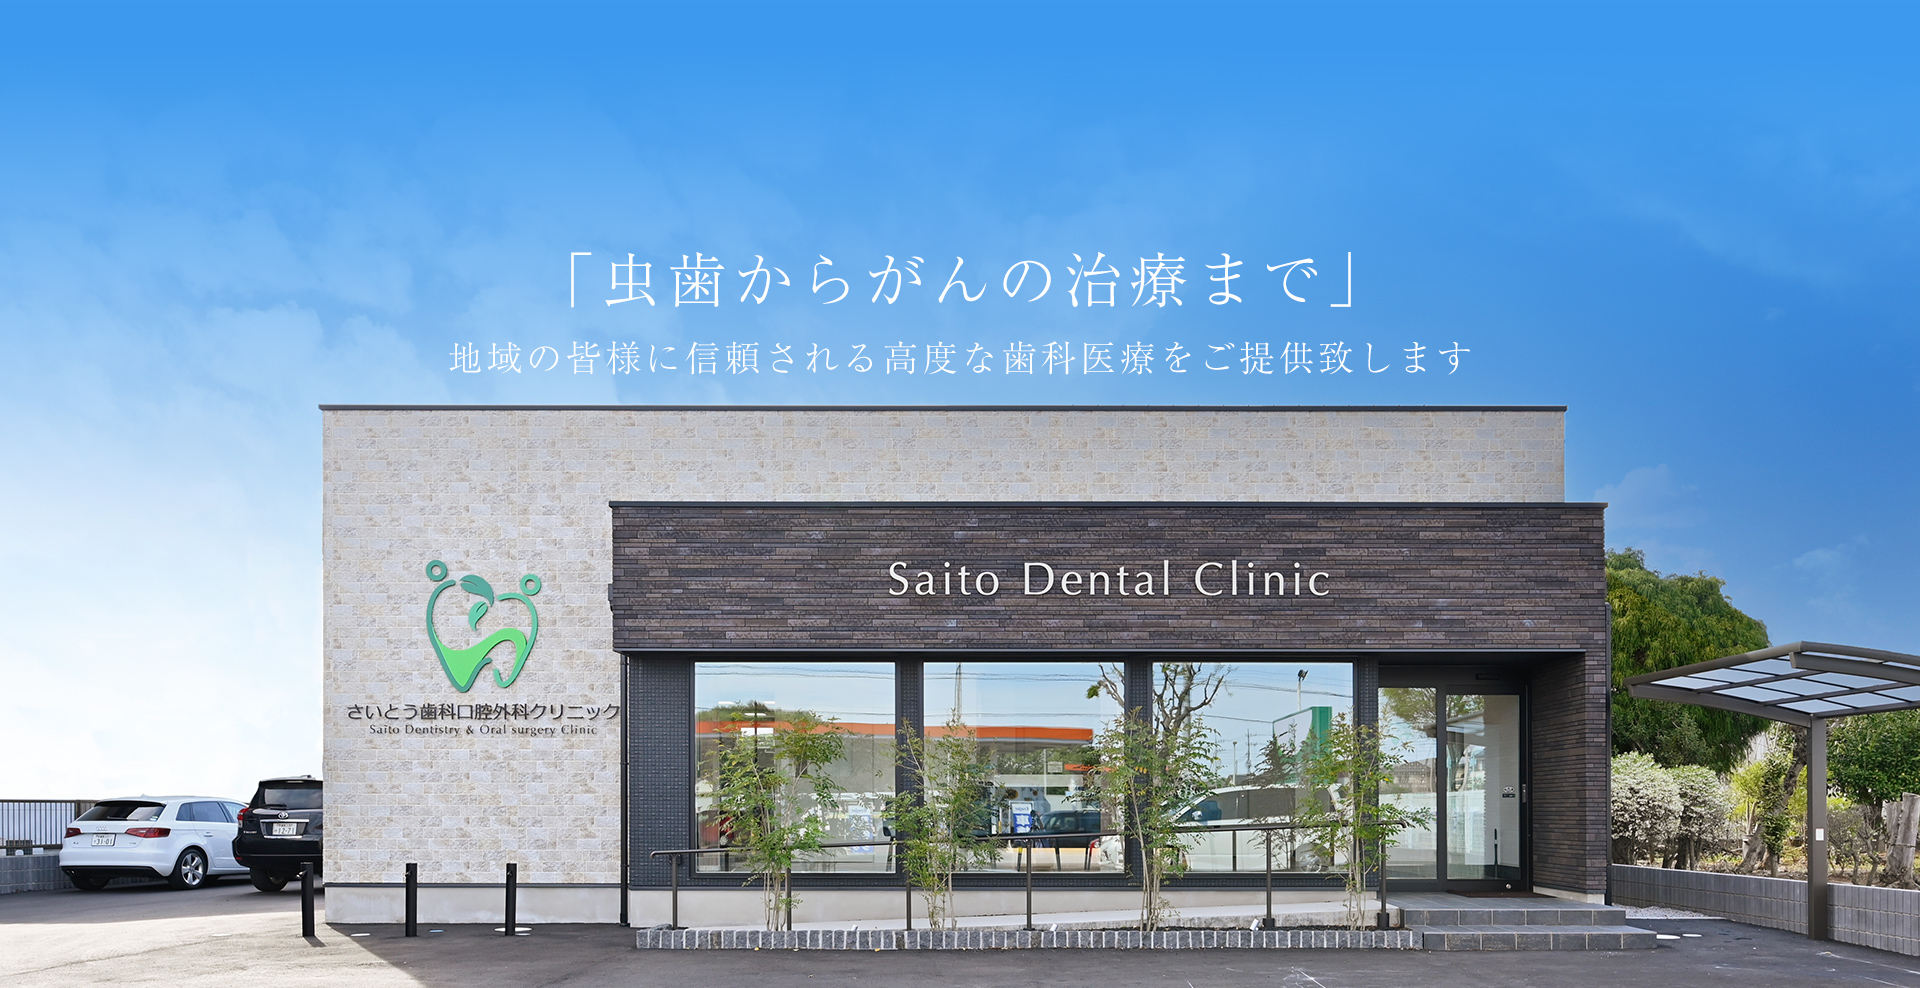 「虫歯からがんの治療まで」地域の皆様に信頼される高度な歯科医療をご提供致します